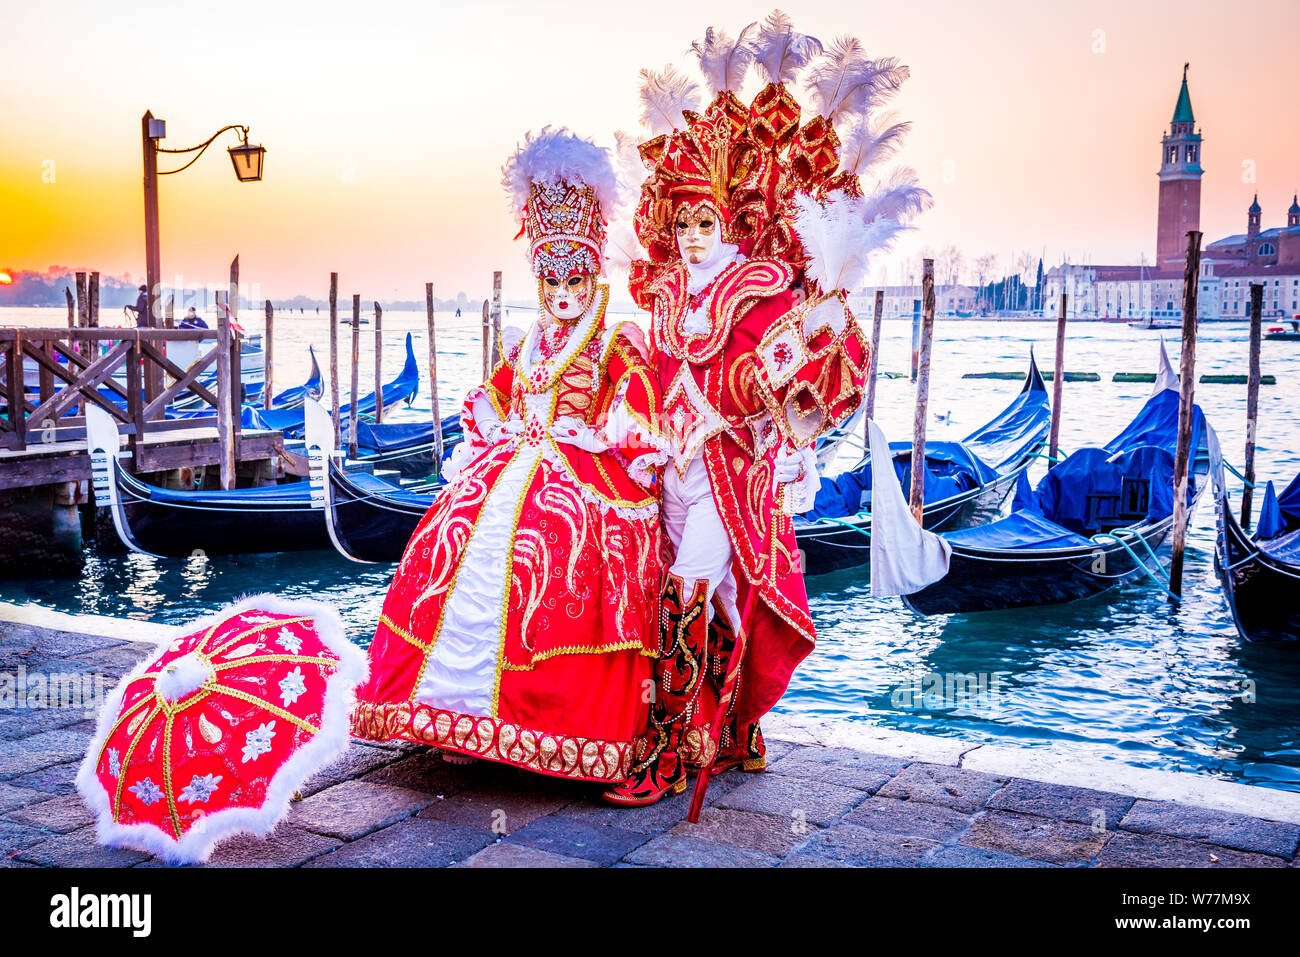 Carnaval de Venise, beau masque à Piazza San Marco avec les gondoles et Grand Canal, Venice, Italie. Banque D'Images